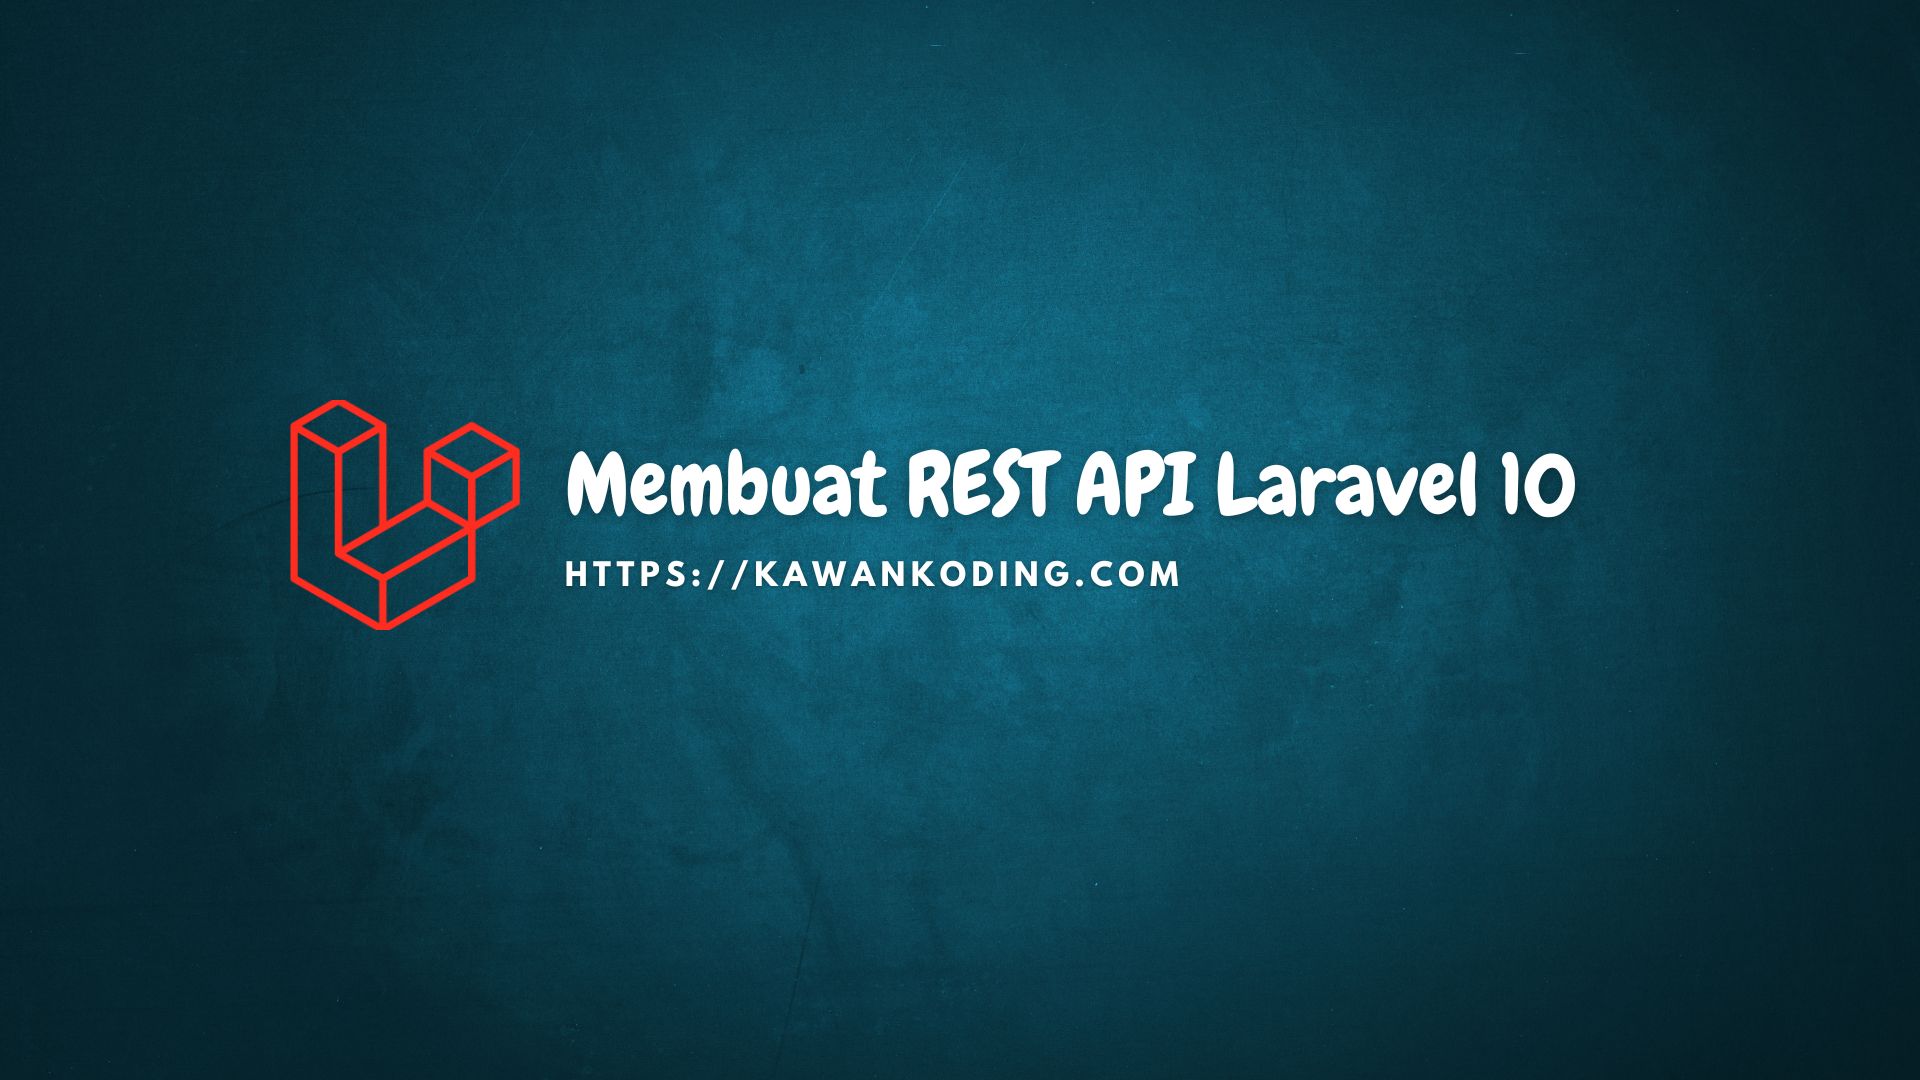 Membuat REST API Laravel 10